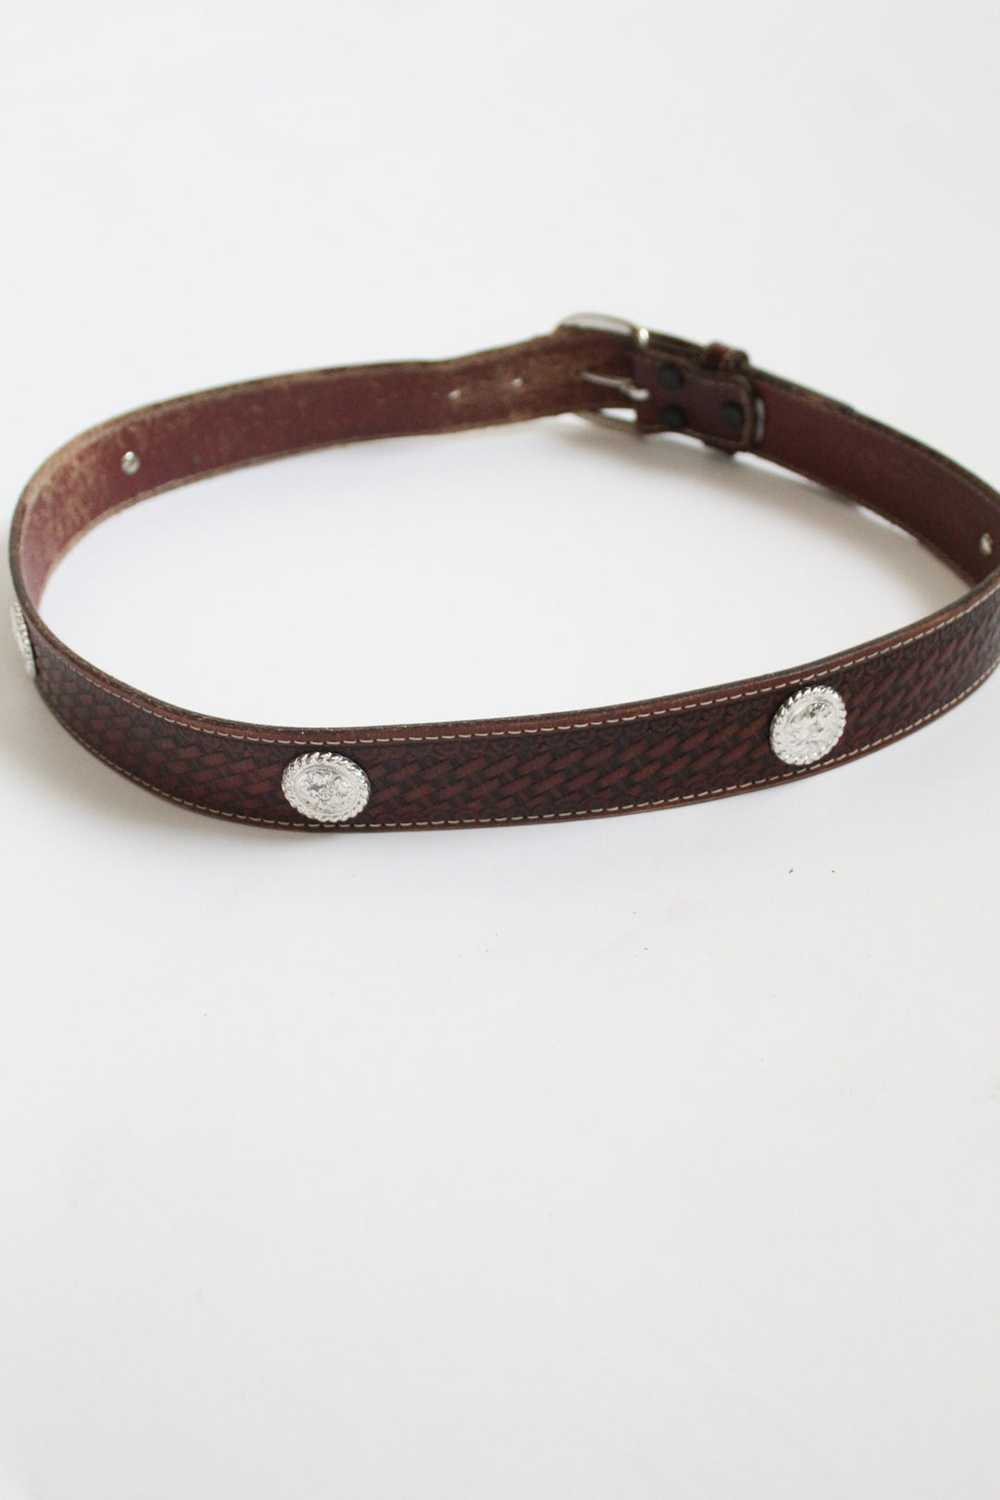 tooled leather belt - image 2